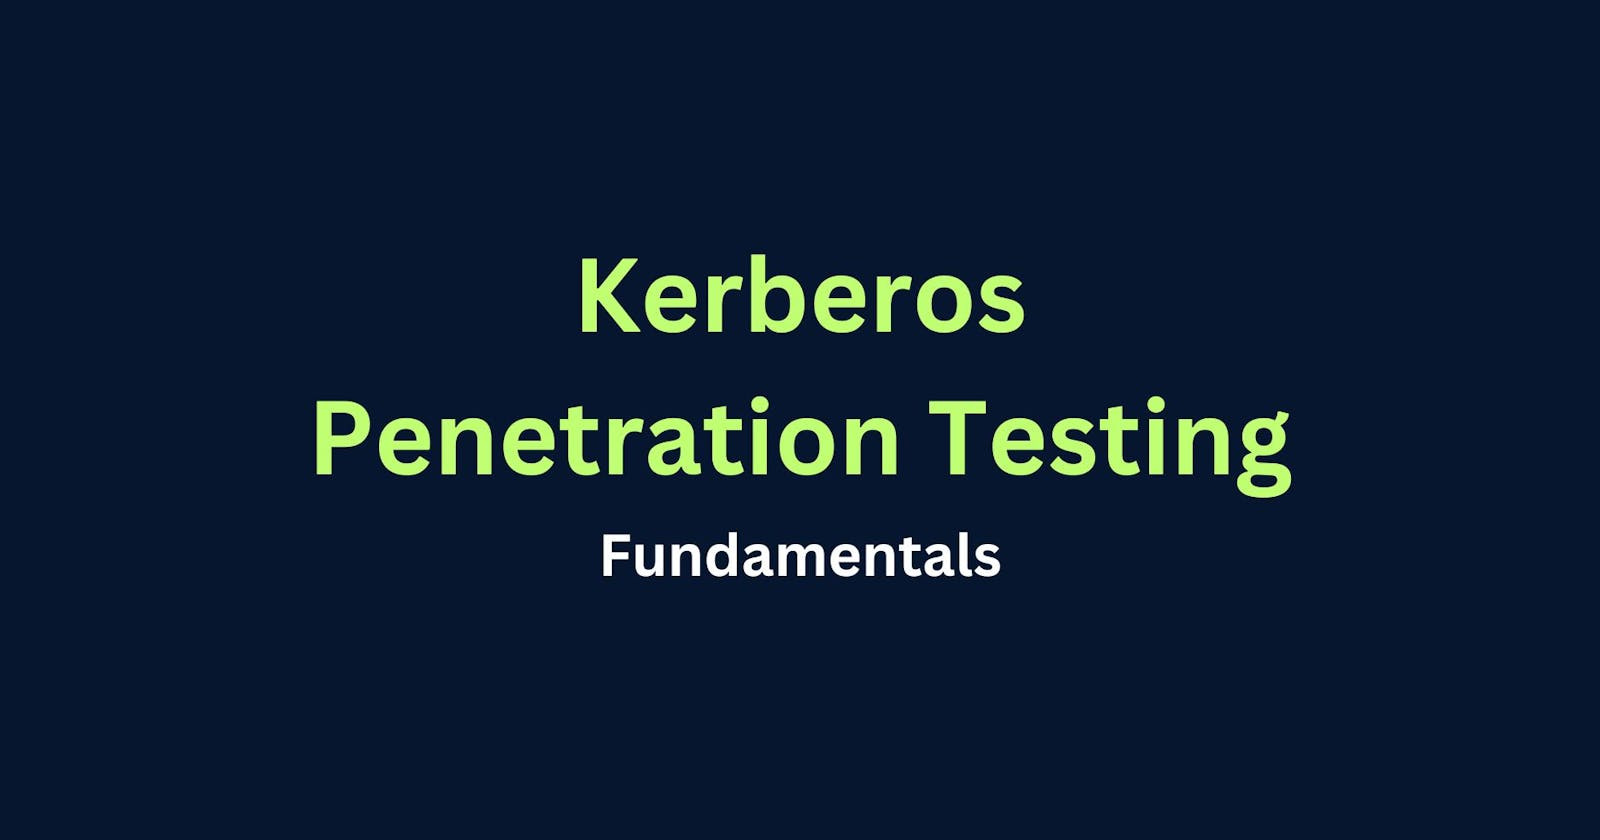 Kerberos Penetration Testing